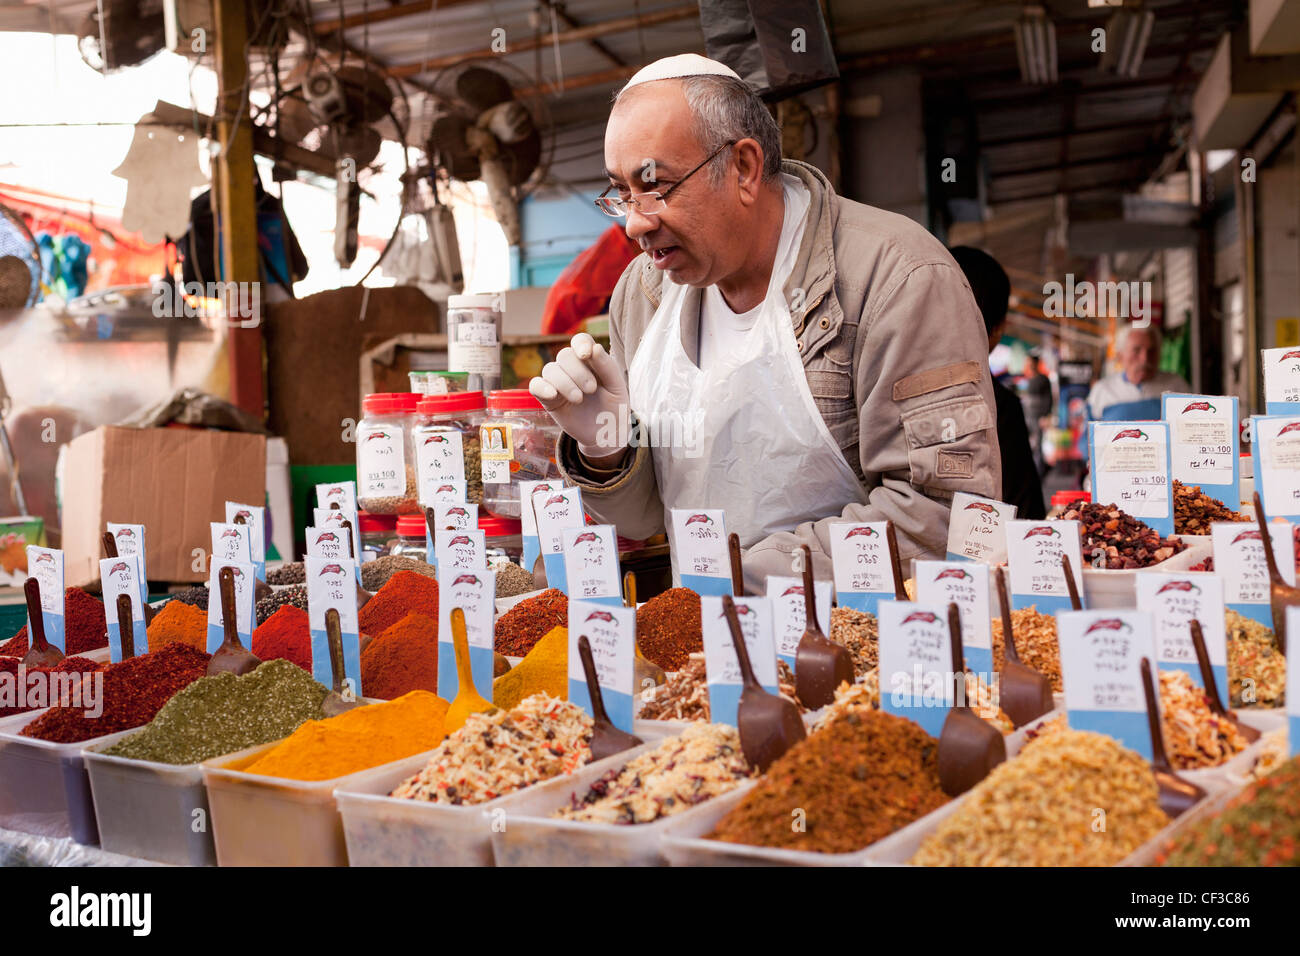 Israël, tel Aviv, Carmel Market, vendeur d'épices avec une exposition d'herbes fraîches et d'épices Banque D'Images